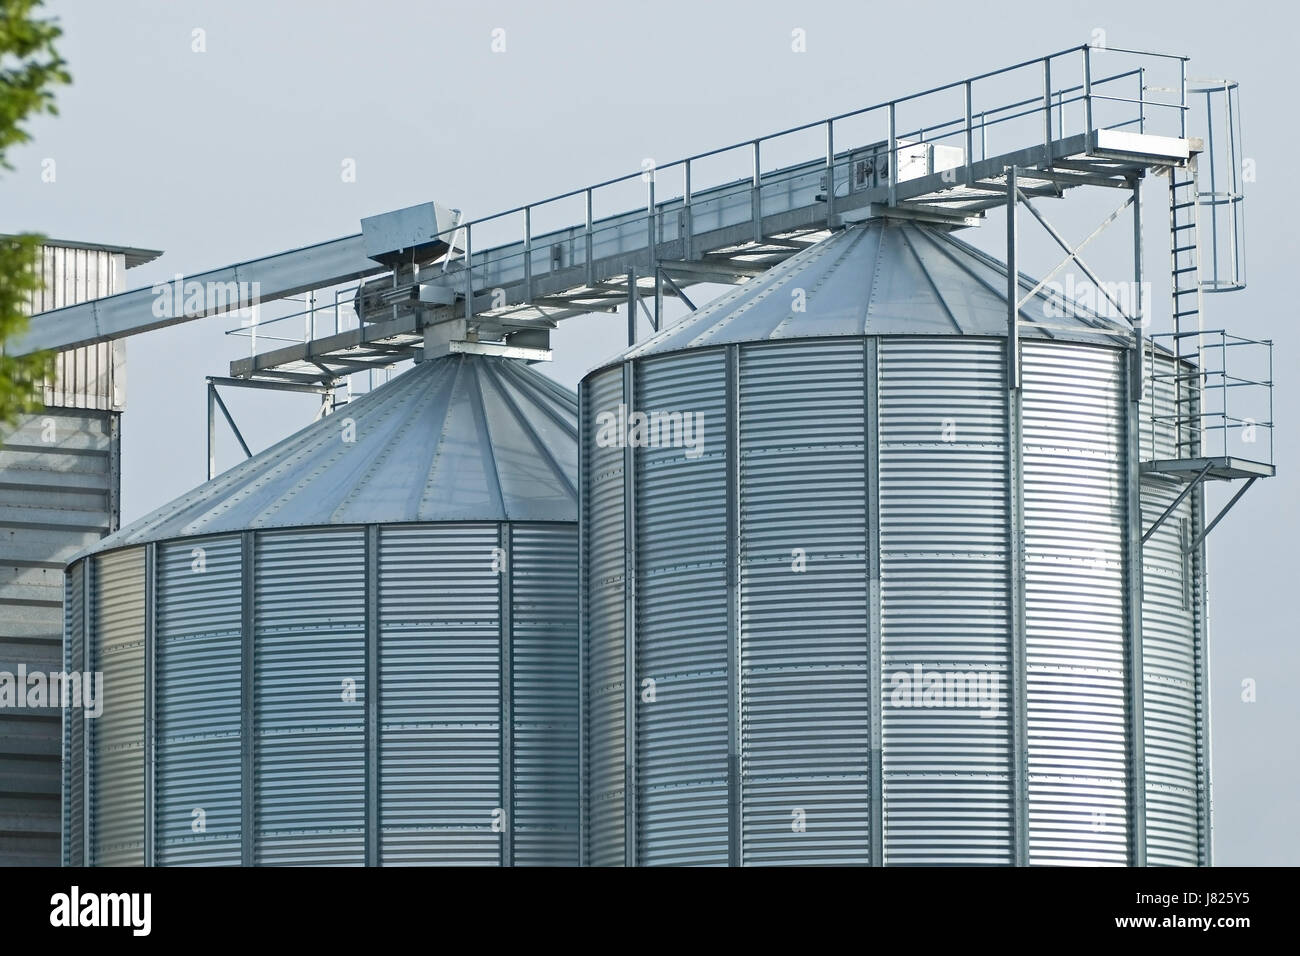 agriculture farming bulk silo silos agriculture farming rise climb climbing Stock Photo